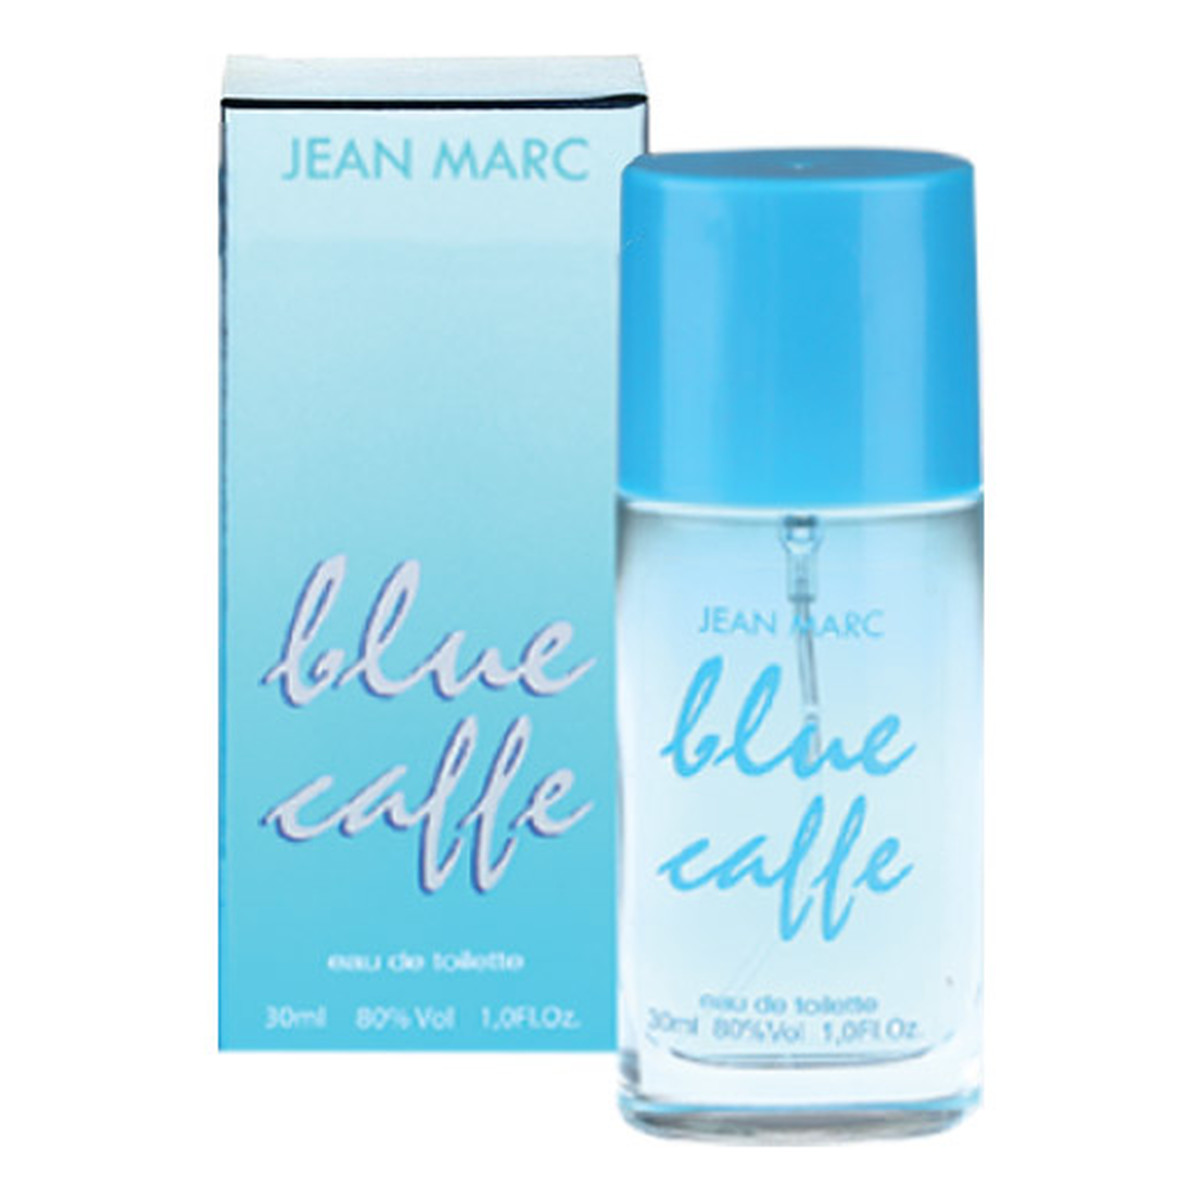 Jean Marc Blue Caffe Woda toaletowa spray 30ml